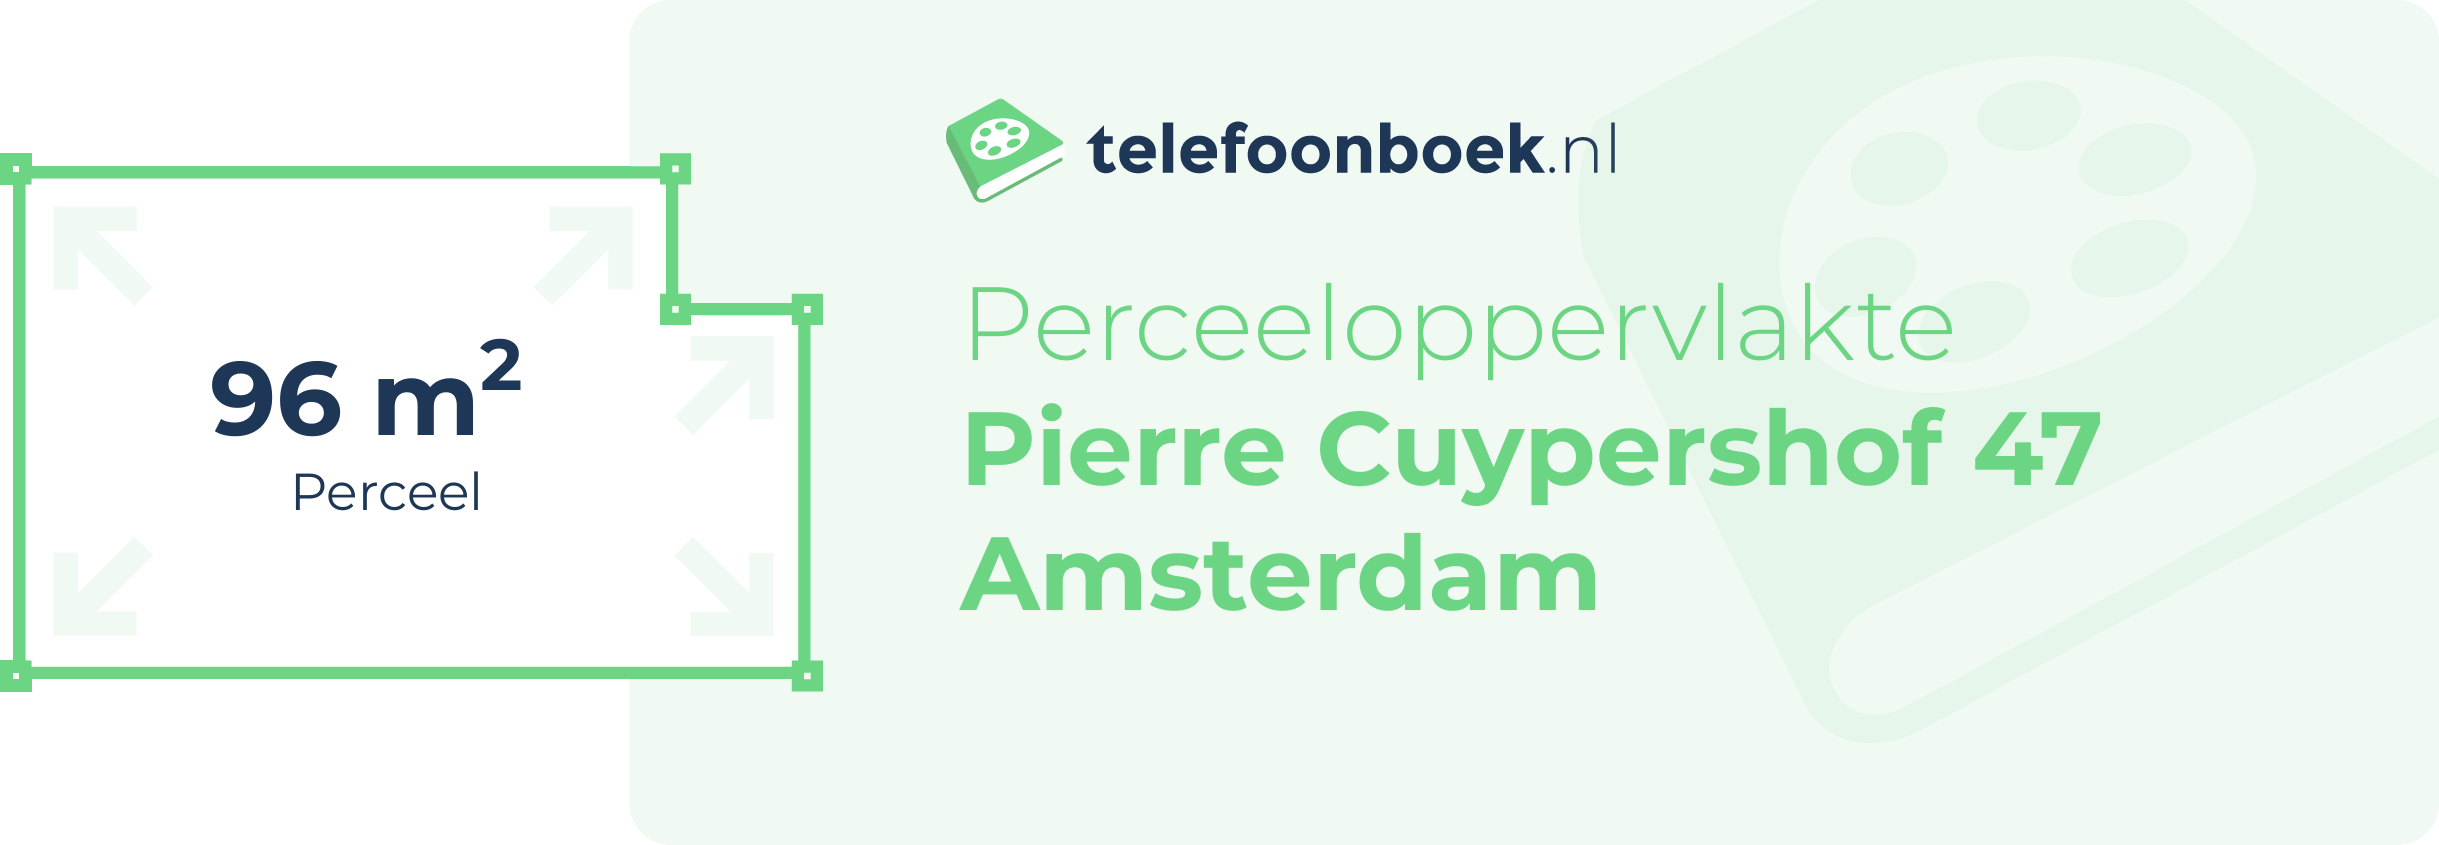 Perceeloppervlakte Pierre Cuypershof 47 Amsterdam